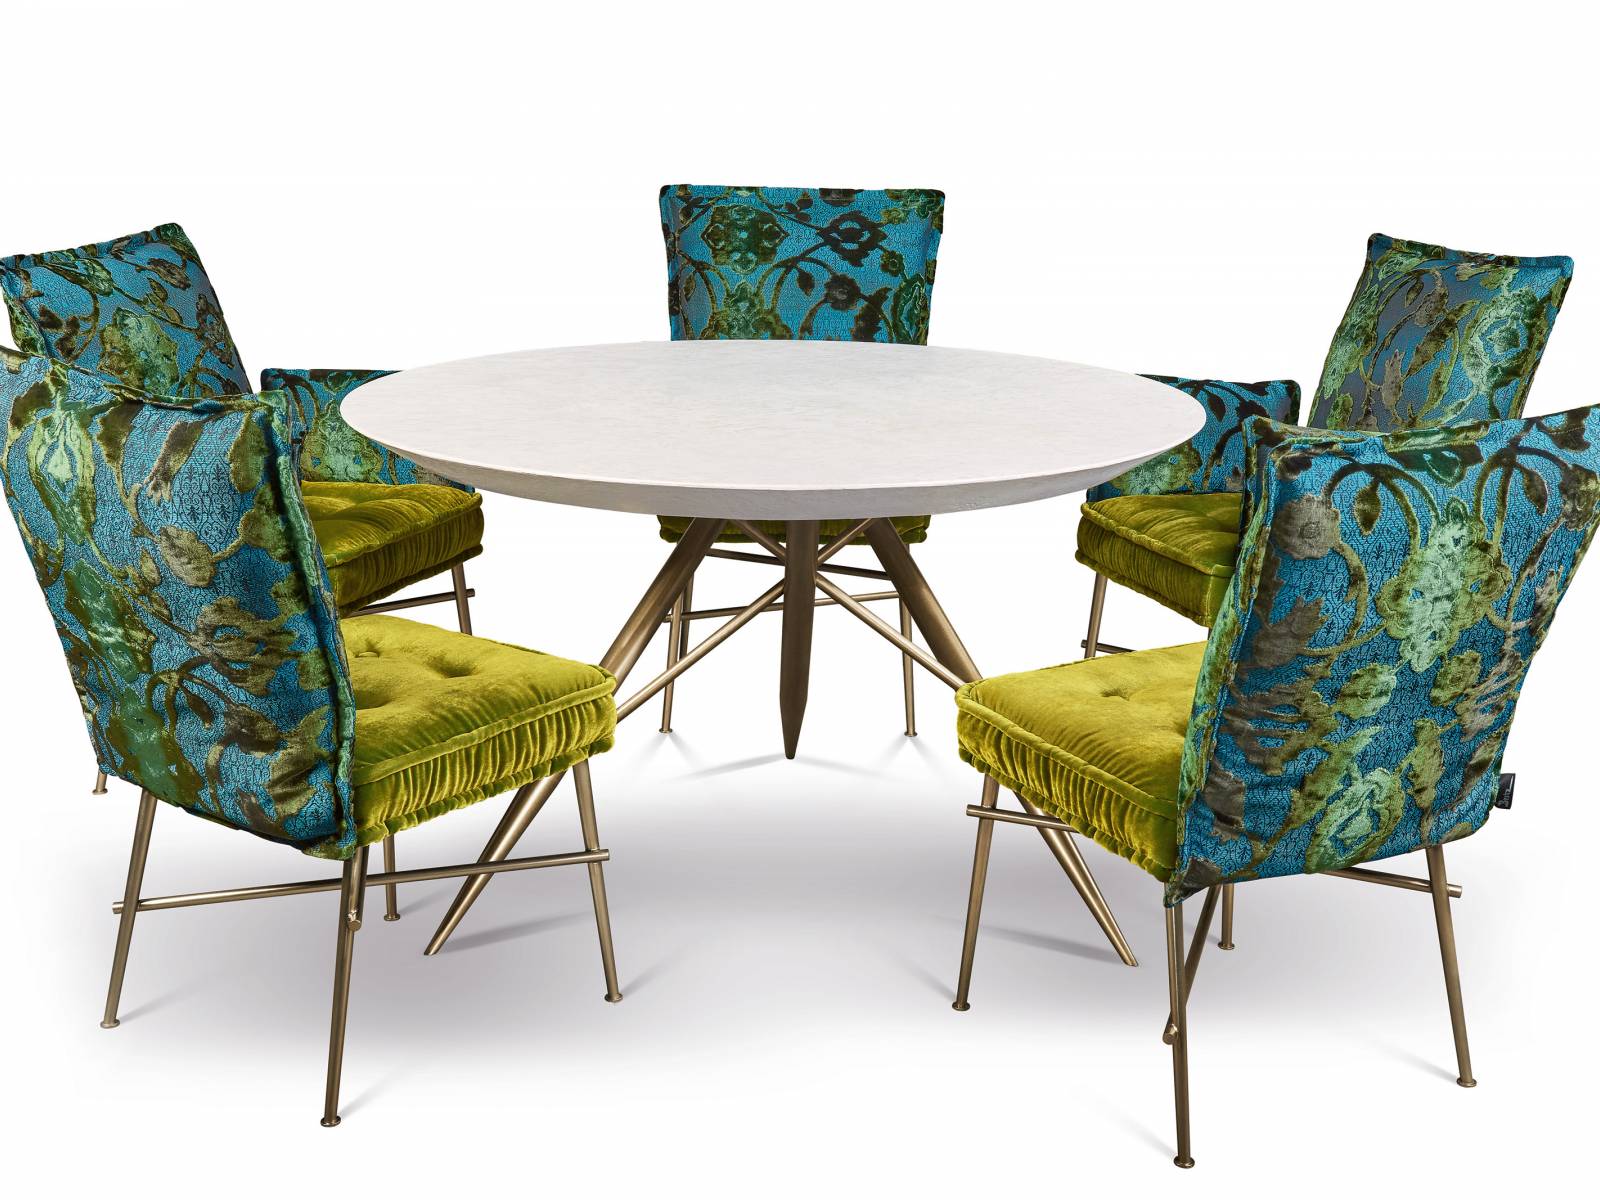 Einen glanzvollen Rahmen für Familien- und Geschäftstreffen bietet die Dining-Kollektion Ohlinda. Sie wurde um charaktervolle Stühle von sesselartigem Komfort mit Stahlbeinen in glänzendem Gold-/Polychrom-Finish ergänzt. Bretz.